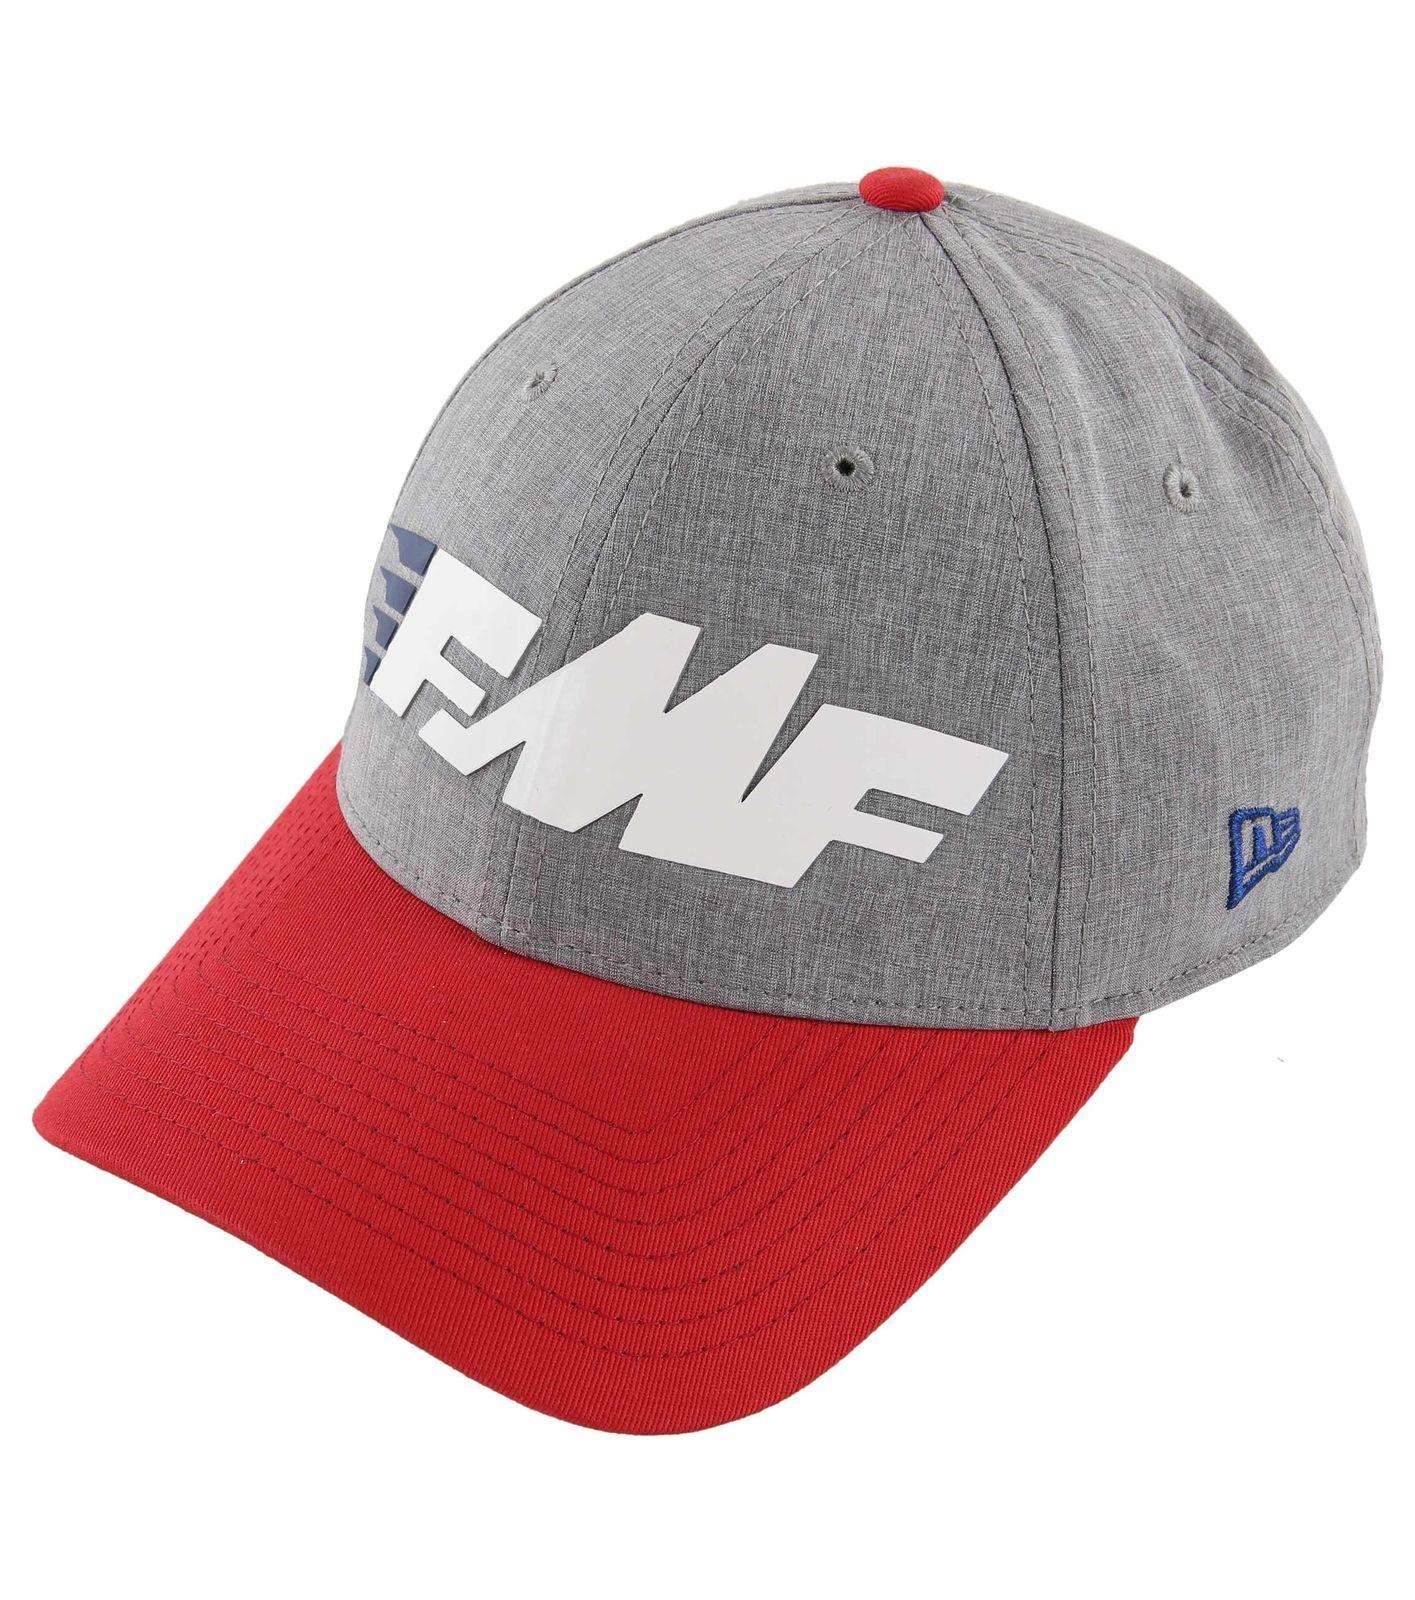 Sleek Racing Logo - FMF Racing Size Men's Sleek Snapback Hat-One Size Racing c81b8c ...